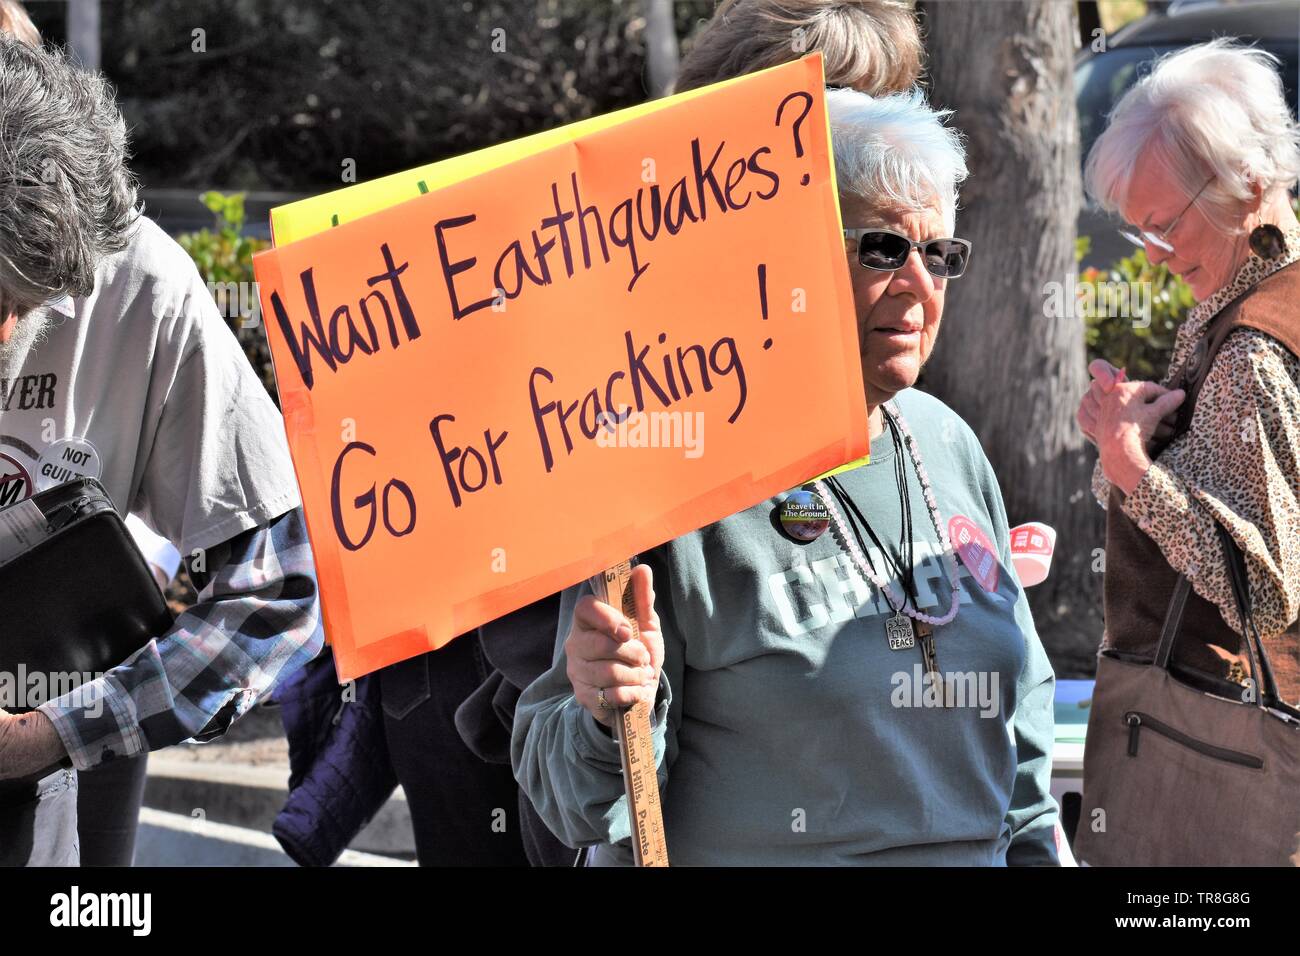 Rally manifestanti contro la perforazione fracking dalle grandi compagnie petrolifere in California centrale USA America che uccide la fauna selvatica e inquina le dune e spiagge Foto Stock